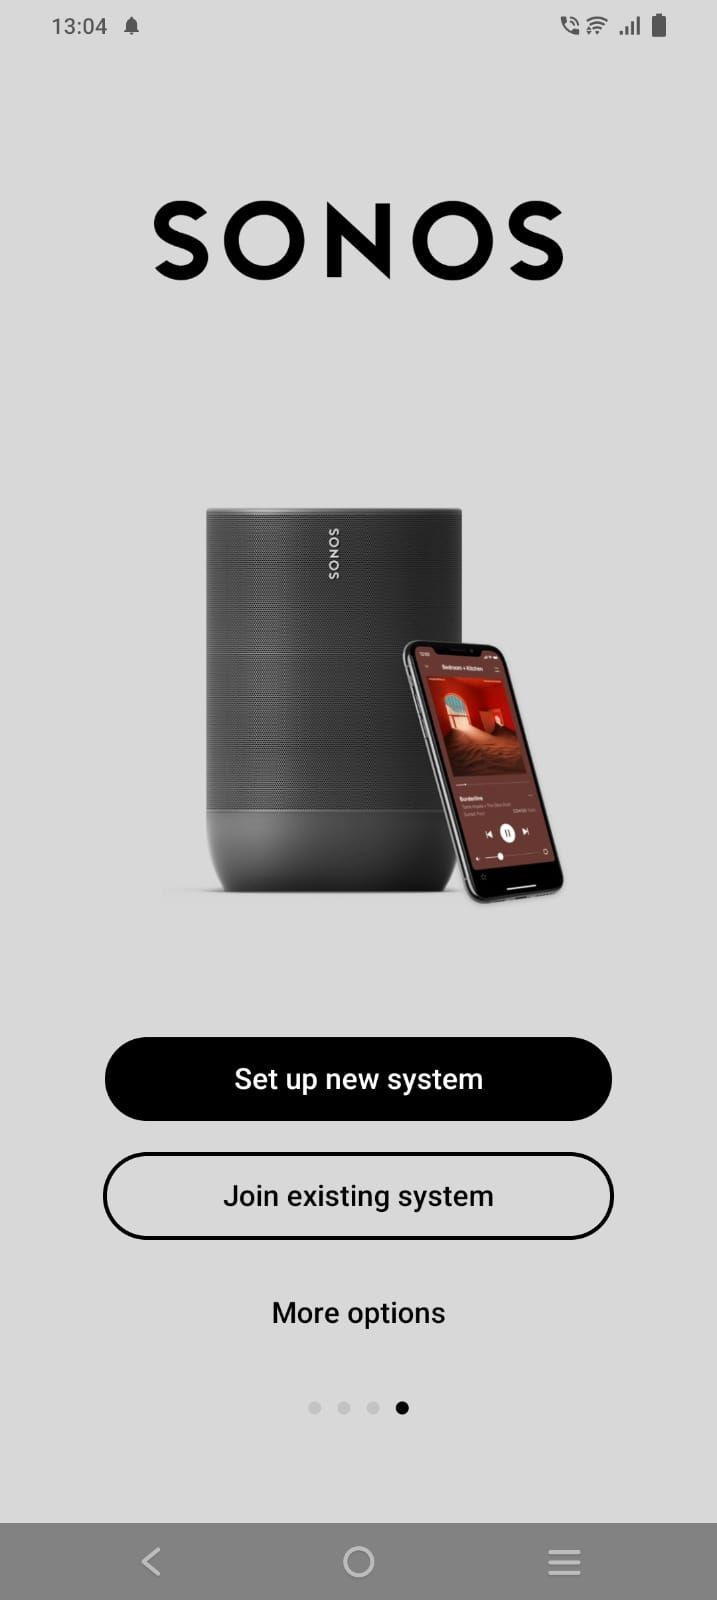 Captura de tela da página de configuração do produto Sonos no aplicativo Sonos